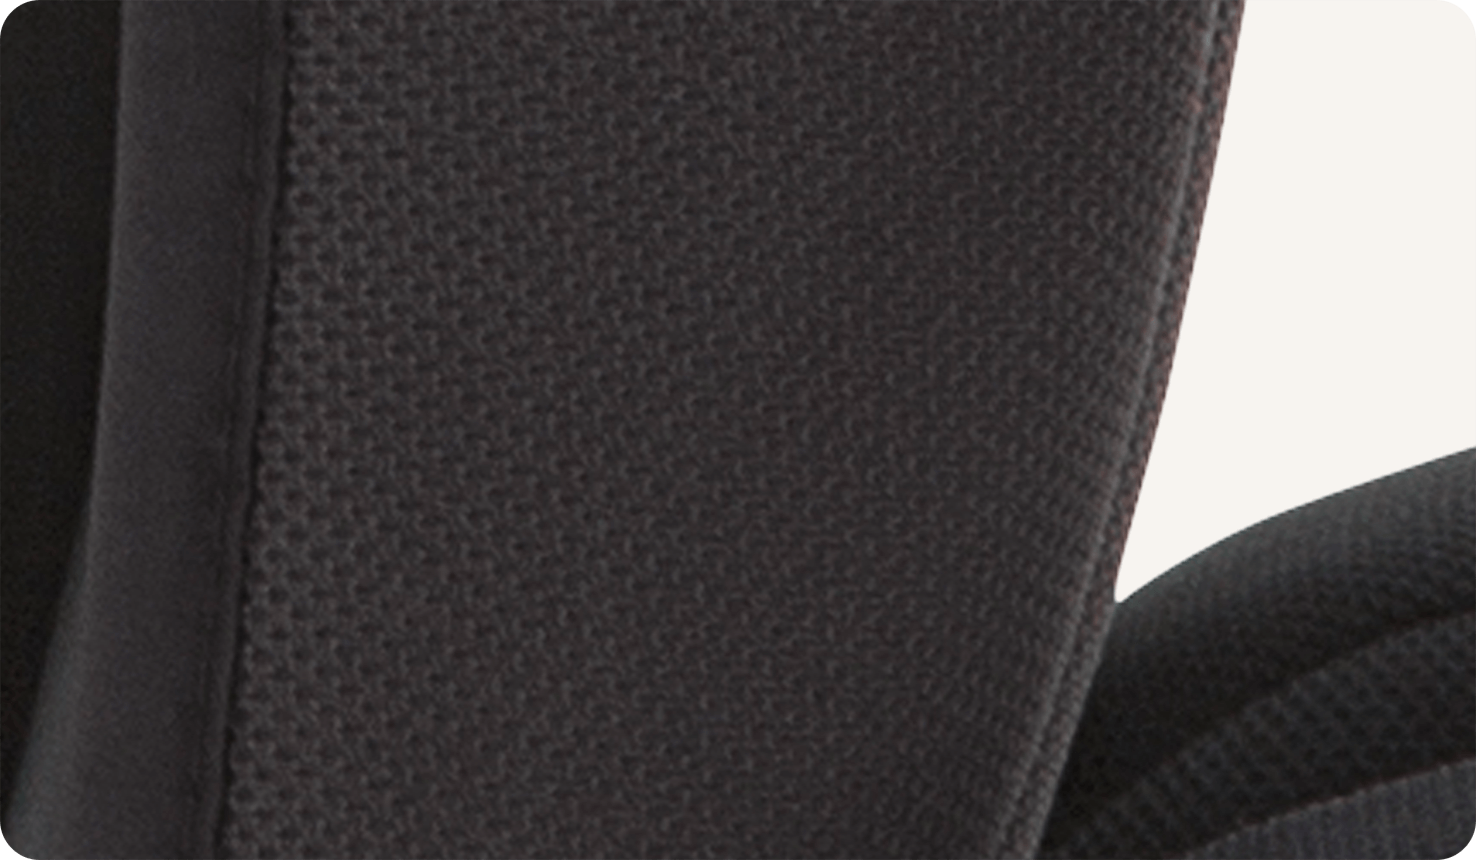 Detalle del tejido de malla negro ventilado de la silla de coche elevadora Joie Elevate.